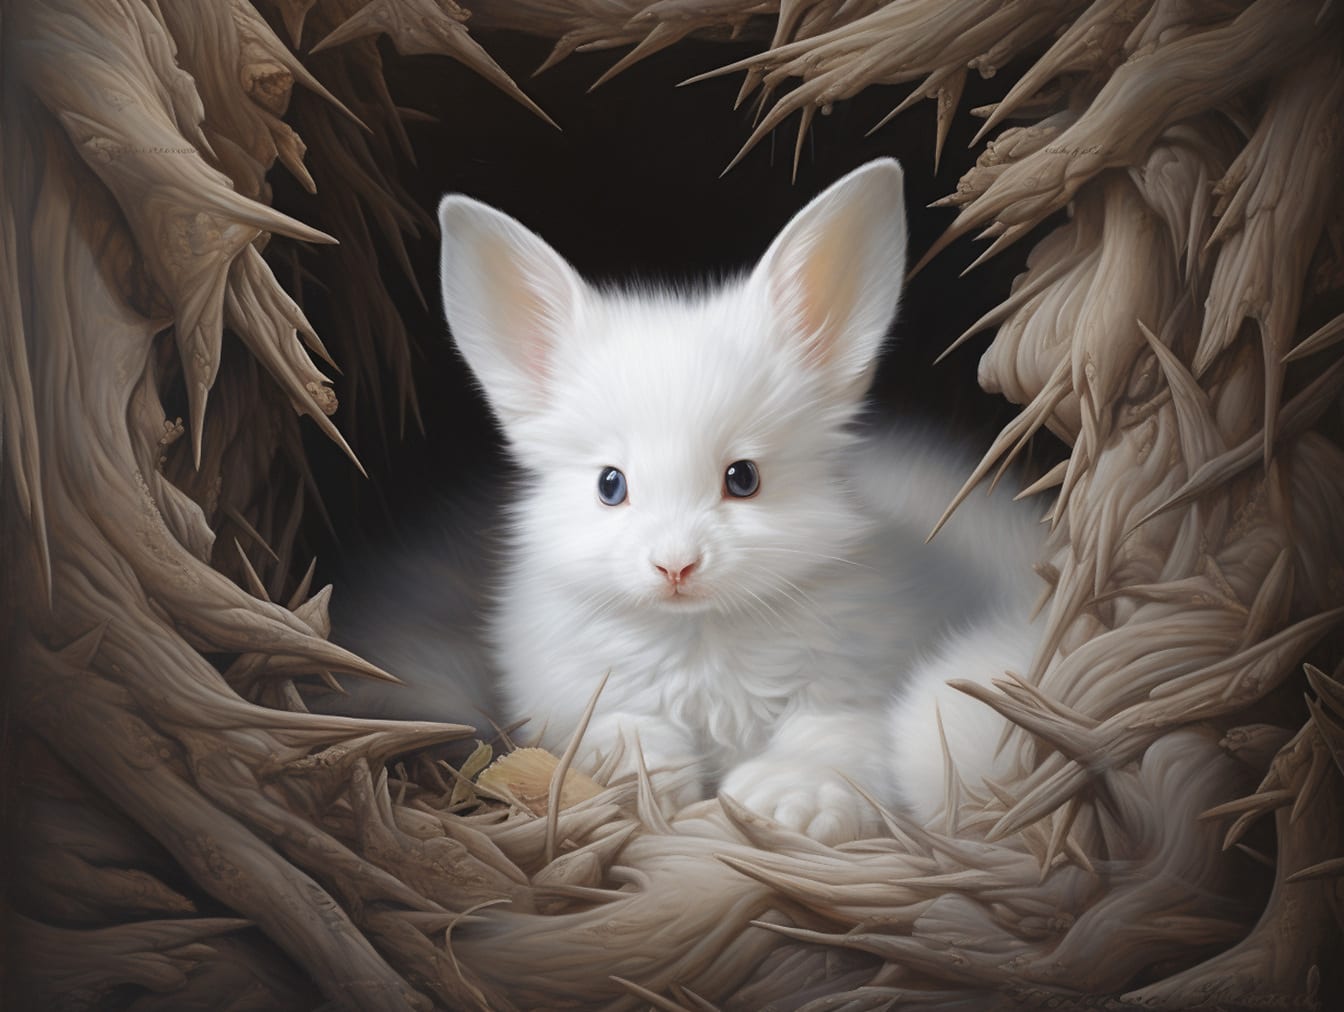 Fantazijní stvoření bílý králíček-klitten s velkýma ušima